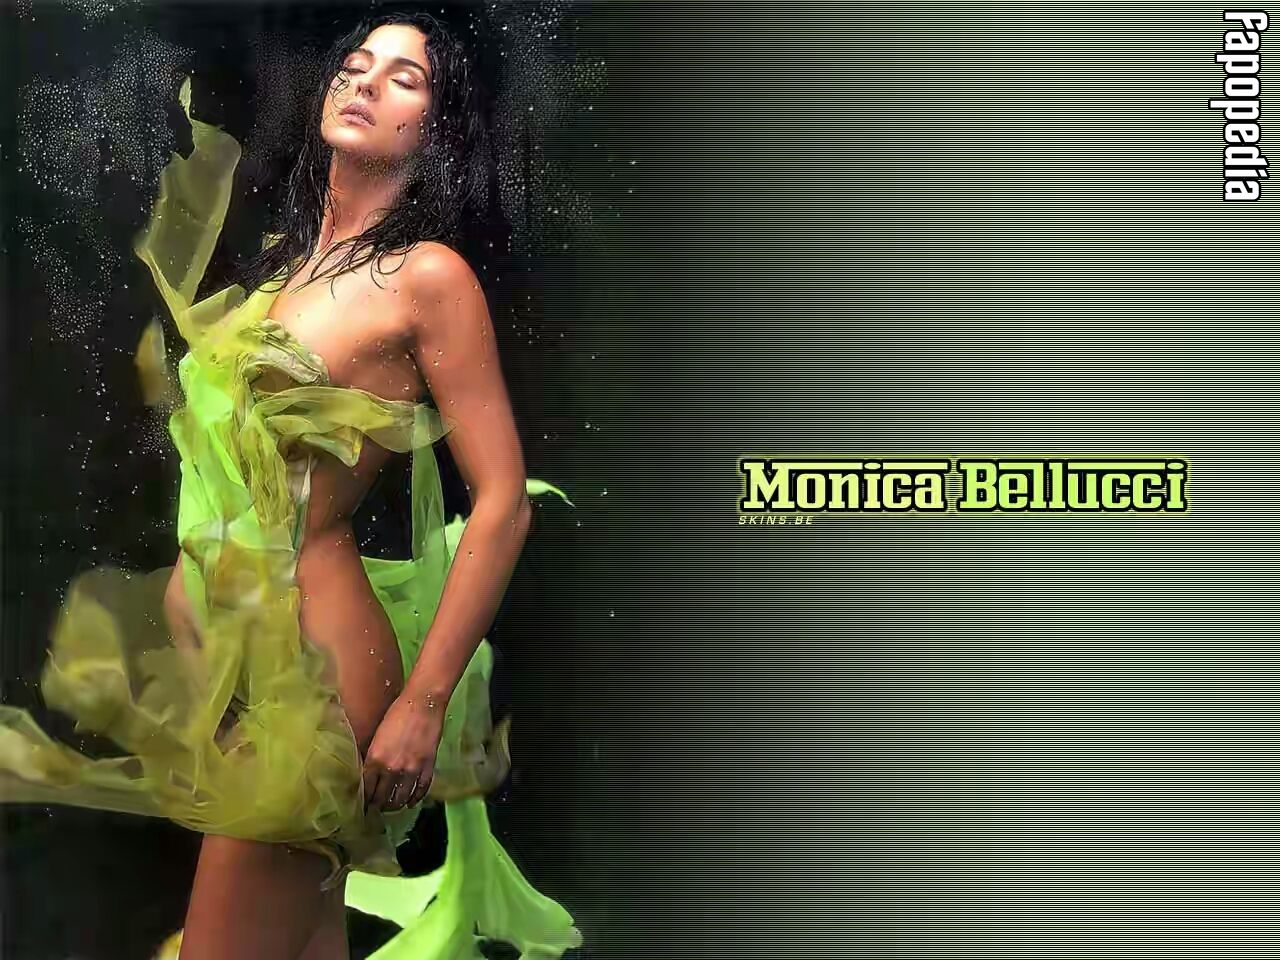 Monica Bellucci Nude Leaks